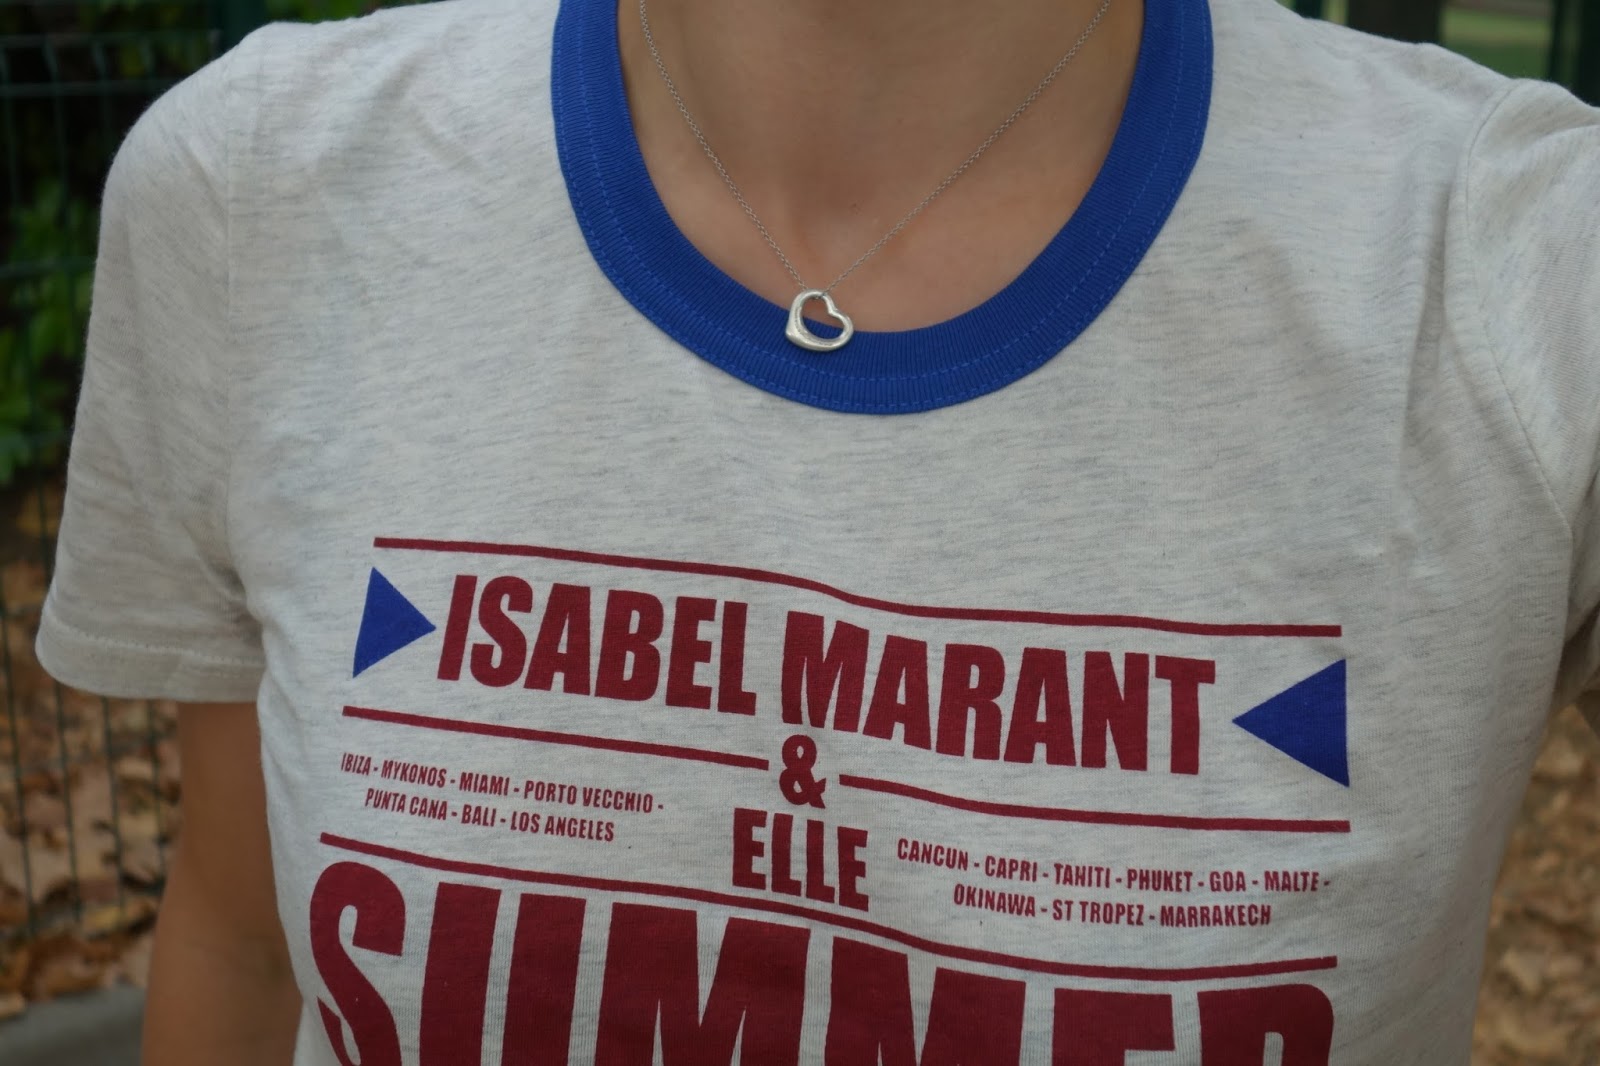 Paristempslibre: Oh très beau T-shirt Isabel Marant vendu avec le Elle!!!